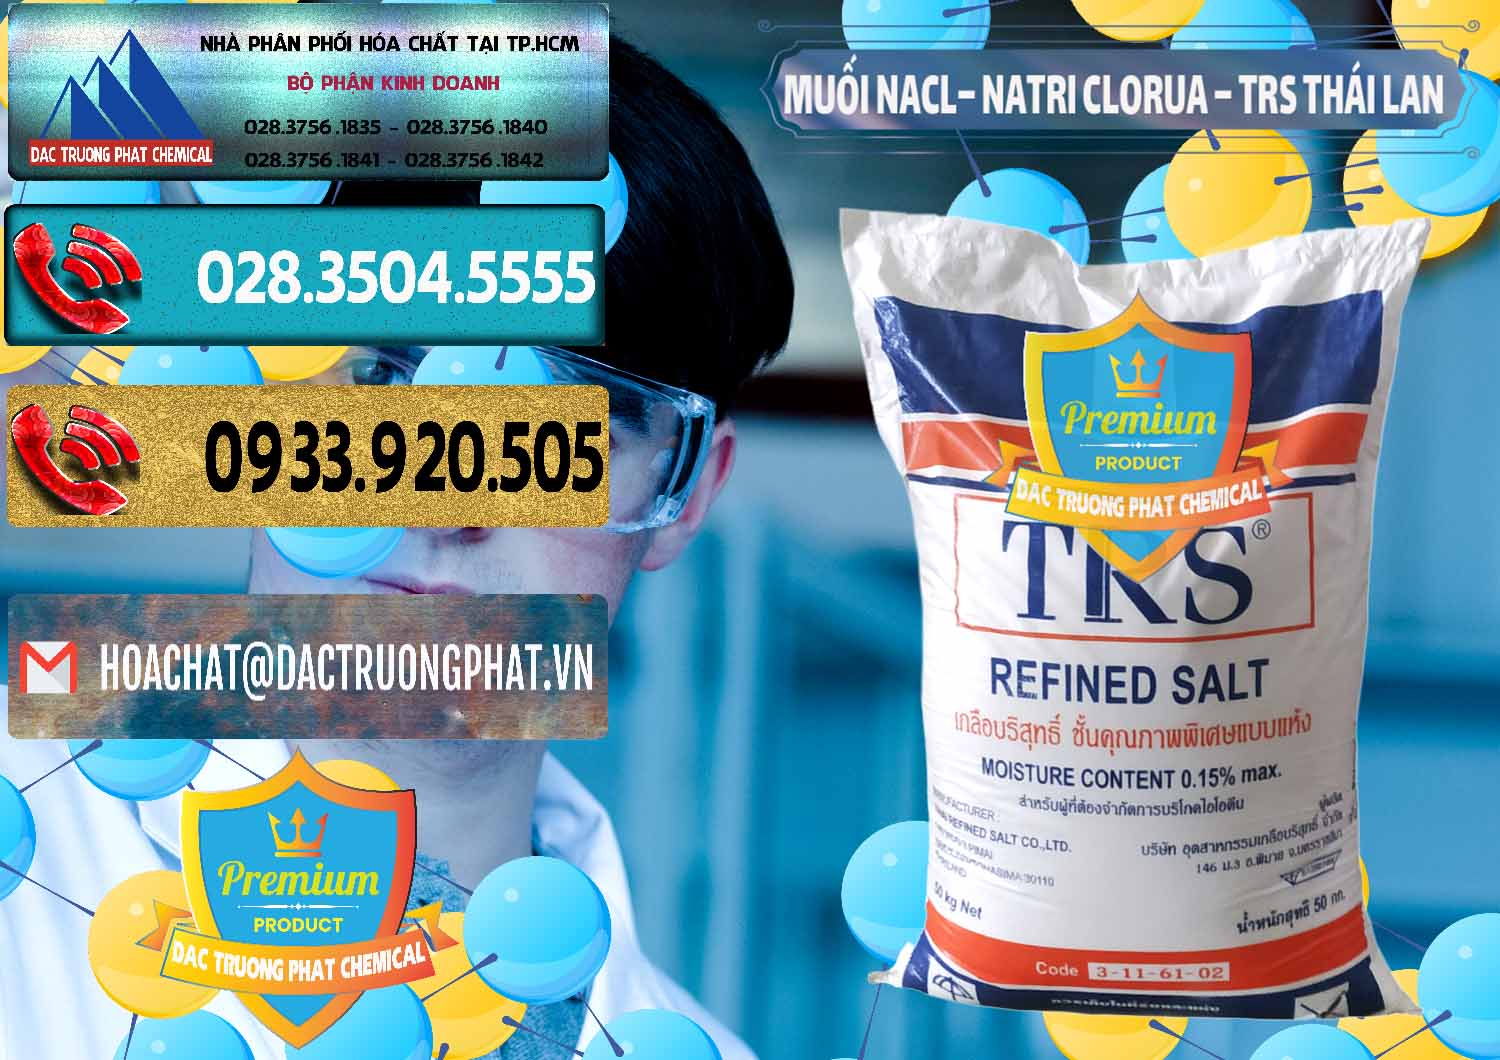 Cty bán & phân phối Muối NaCL – Sodium Chloride TRS Thái Lan - 0096 - Cty chuyên cung ứng - phân phối hóa chất tại TP.HCM - hoachatdetnhuom.com